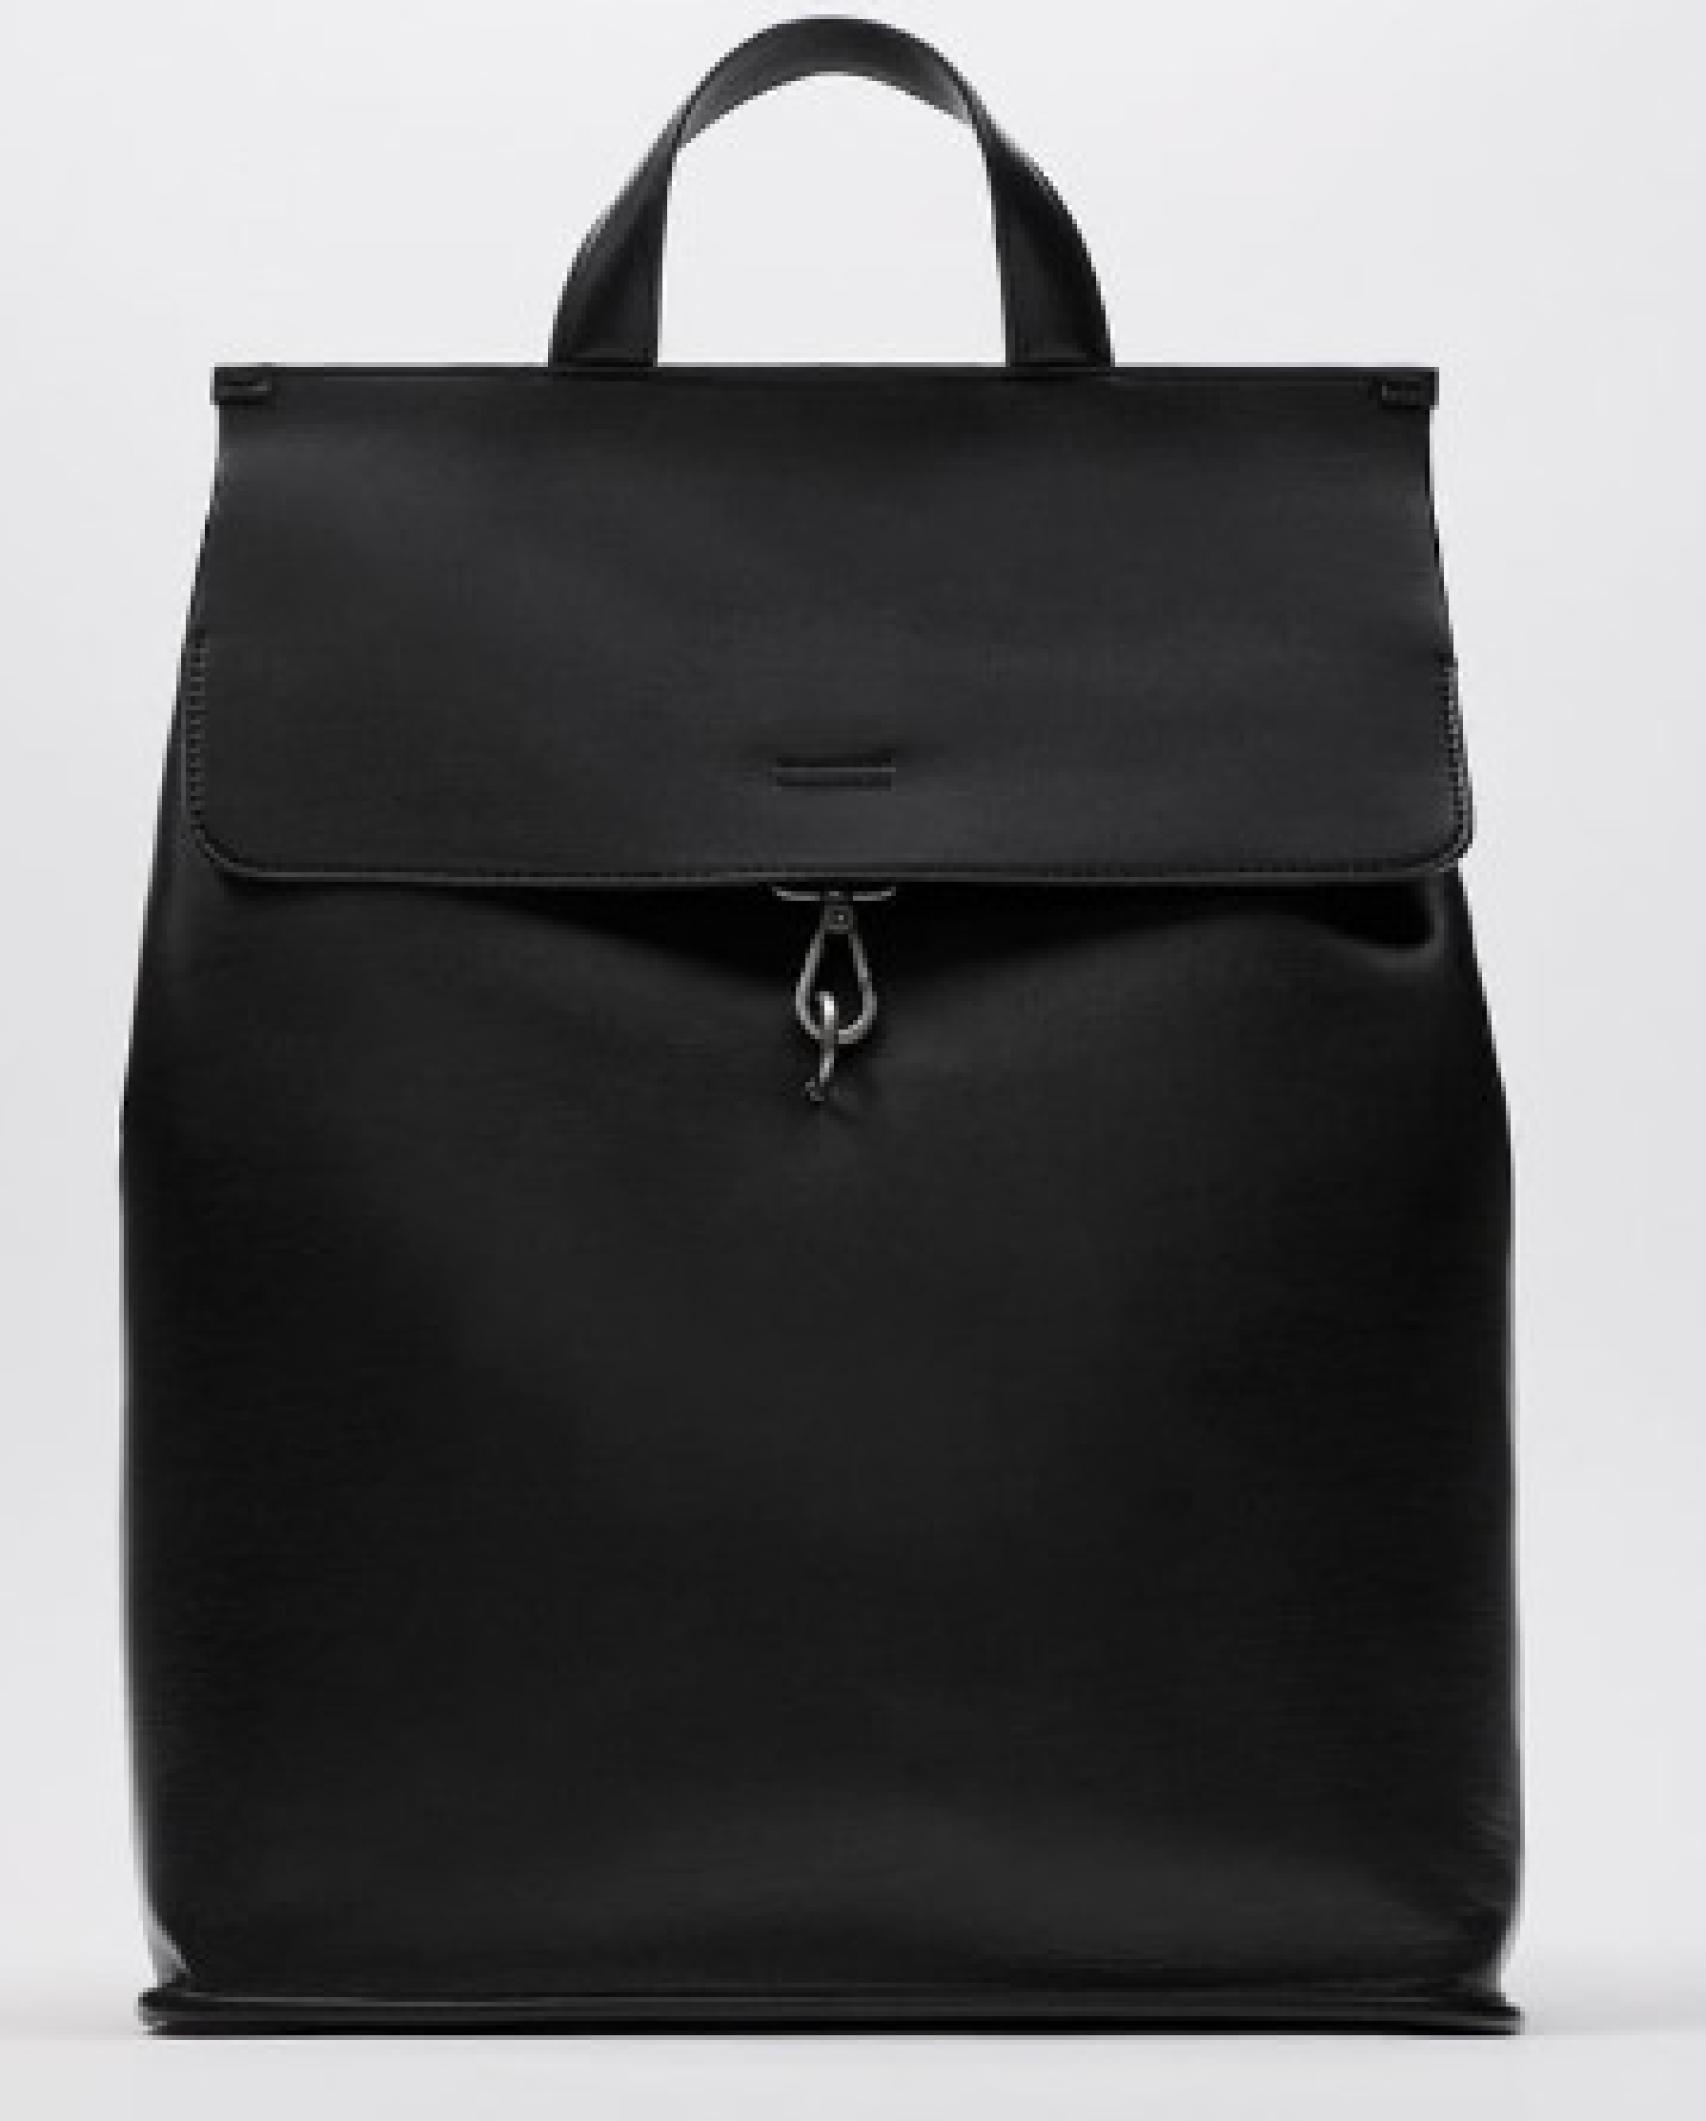 El último chollo de rebajas de Zara: una mochila tipo bolso cómoda y acolchada por euros